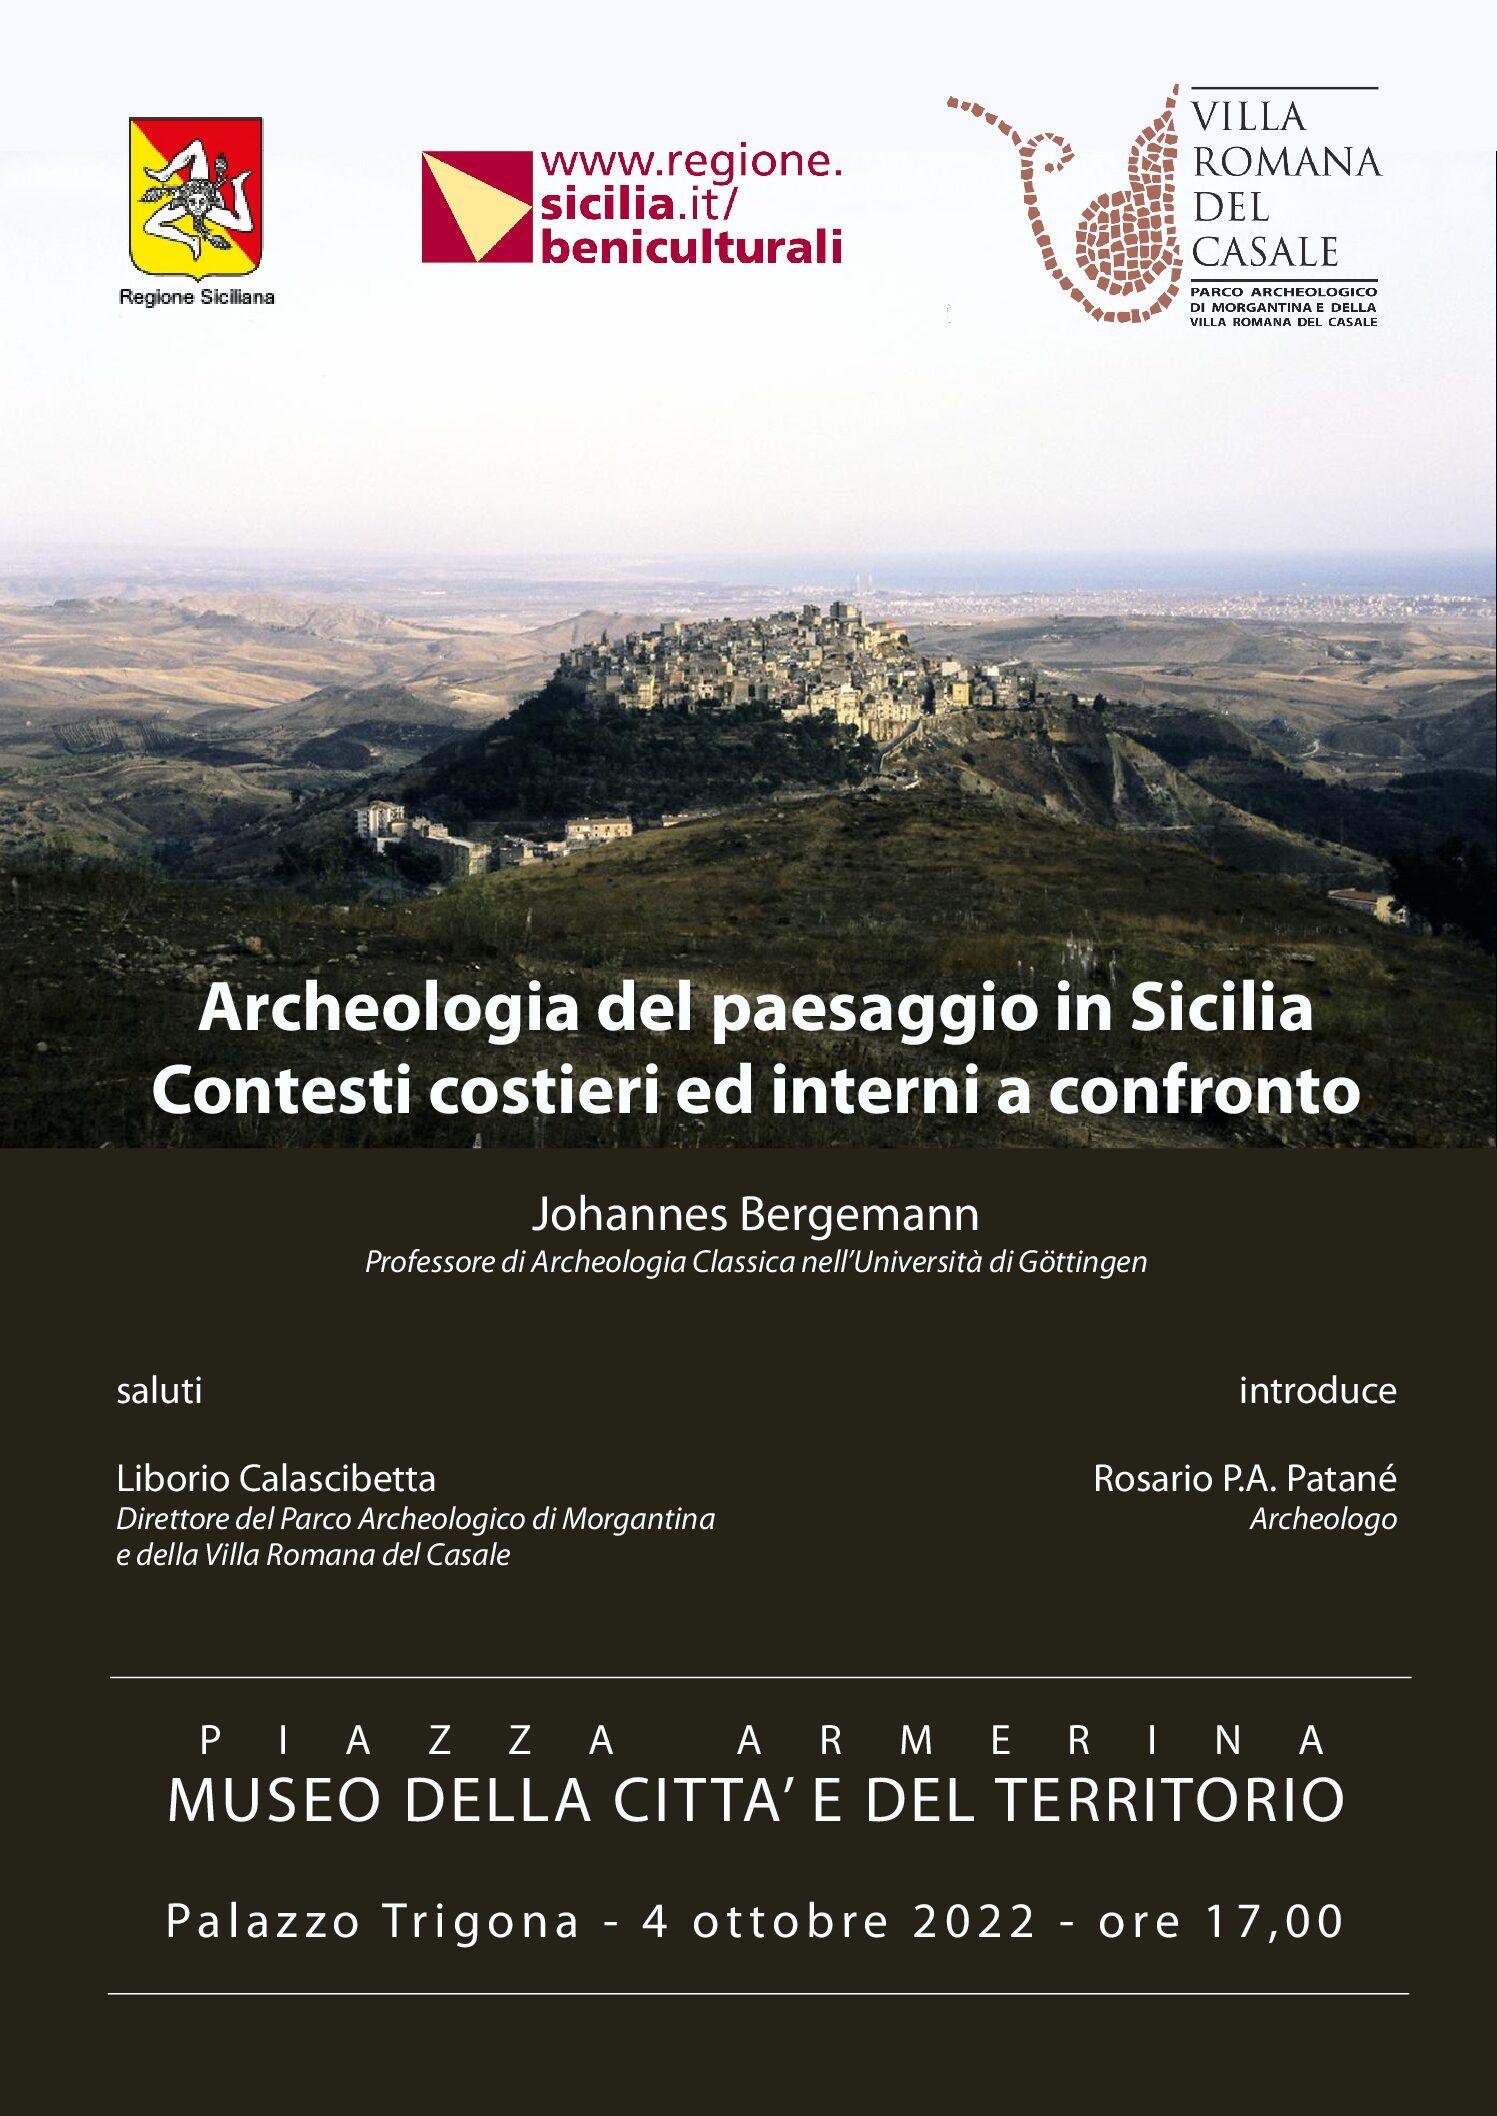 Il 4 ottobre a Piazza Armerina lectio dell’archeologo Johannes Bergemann sull’archeologia del paesaggio e le nuove tecniche di indagine